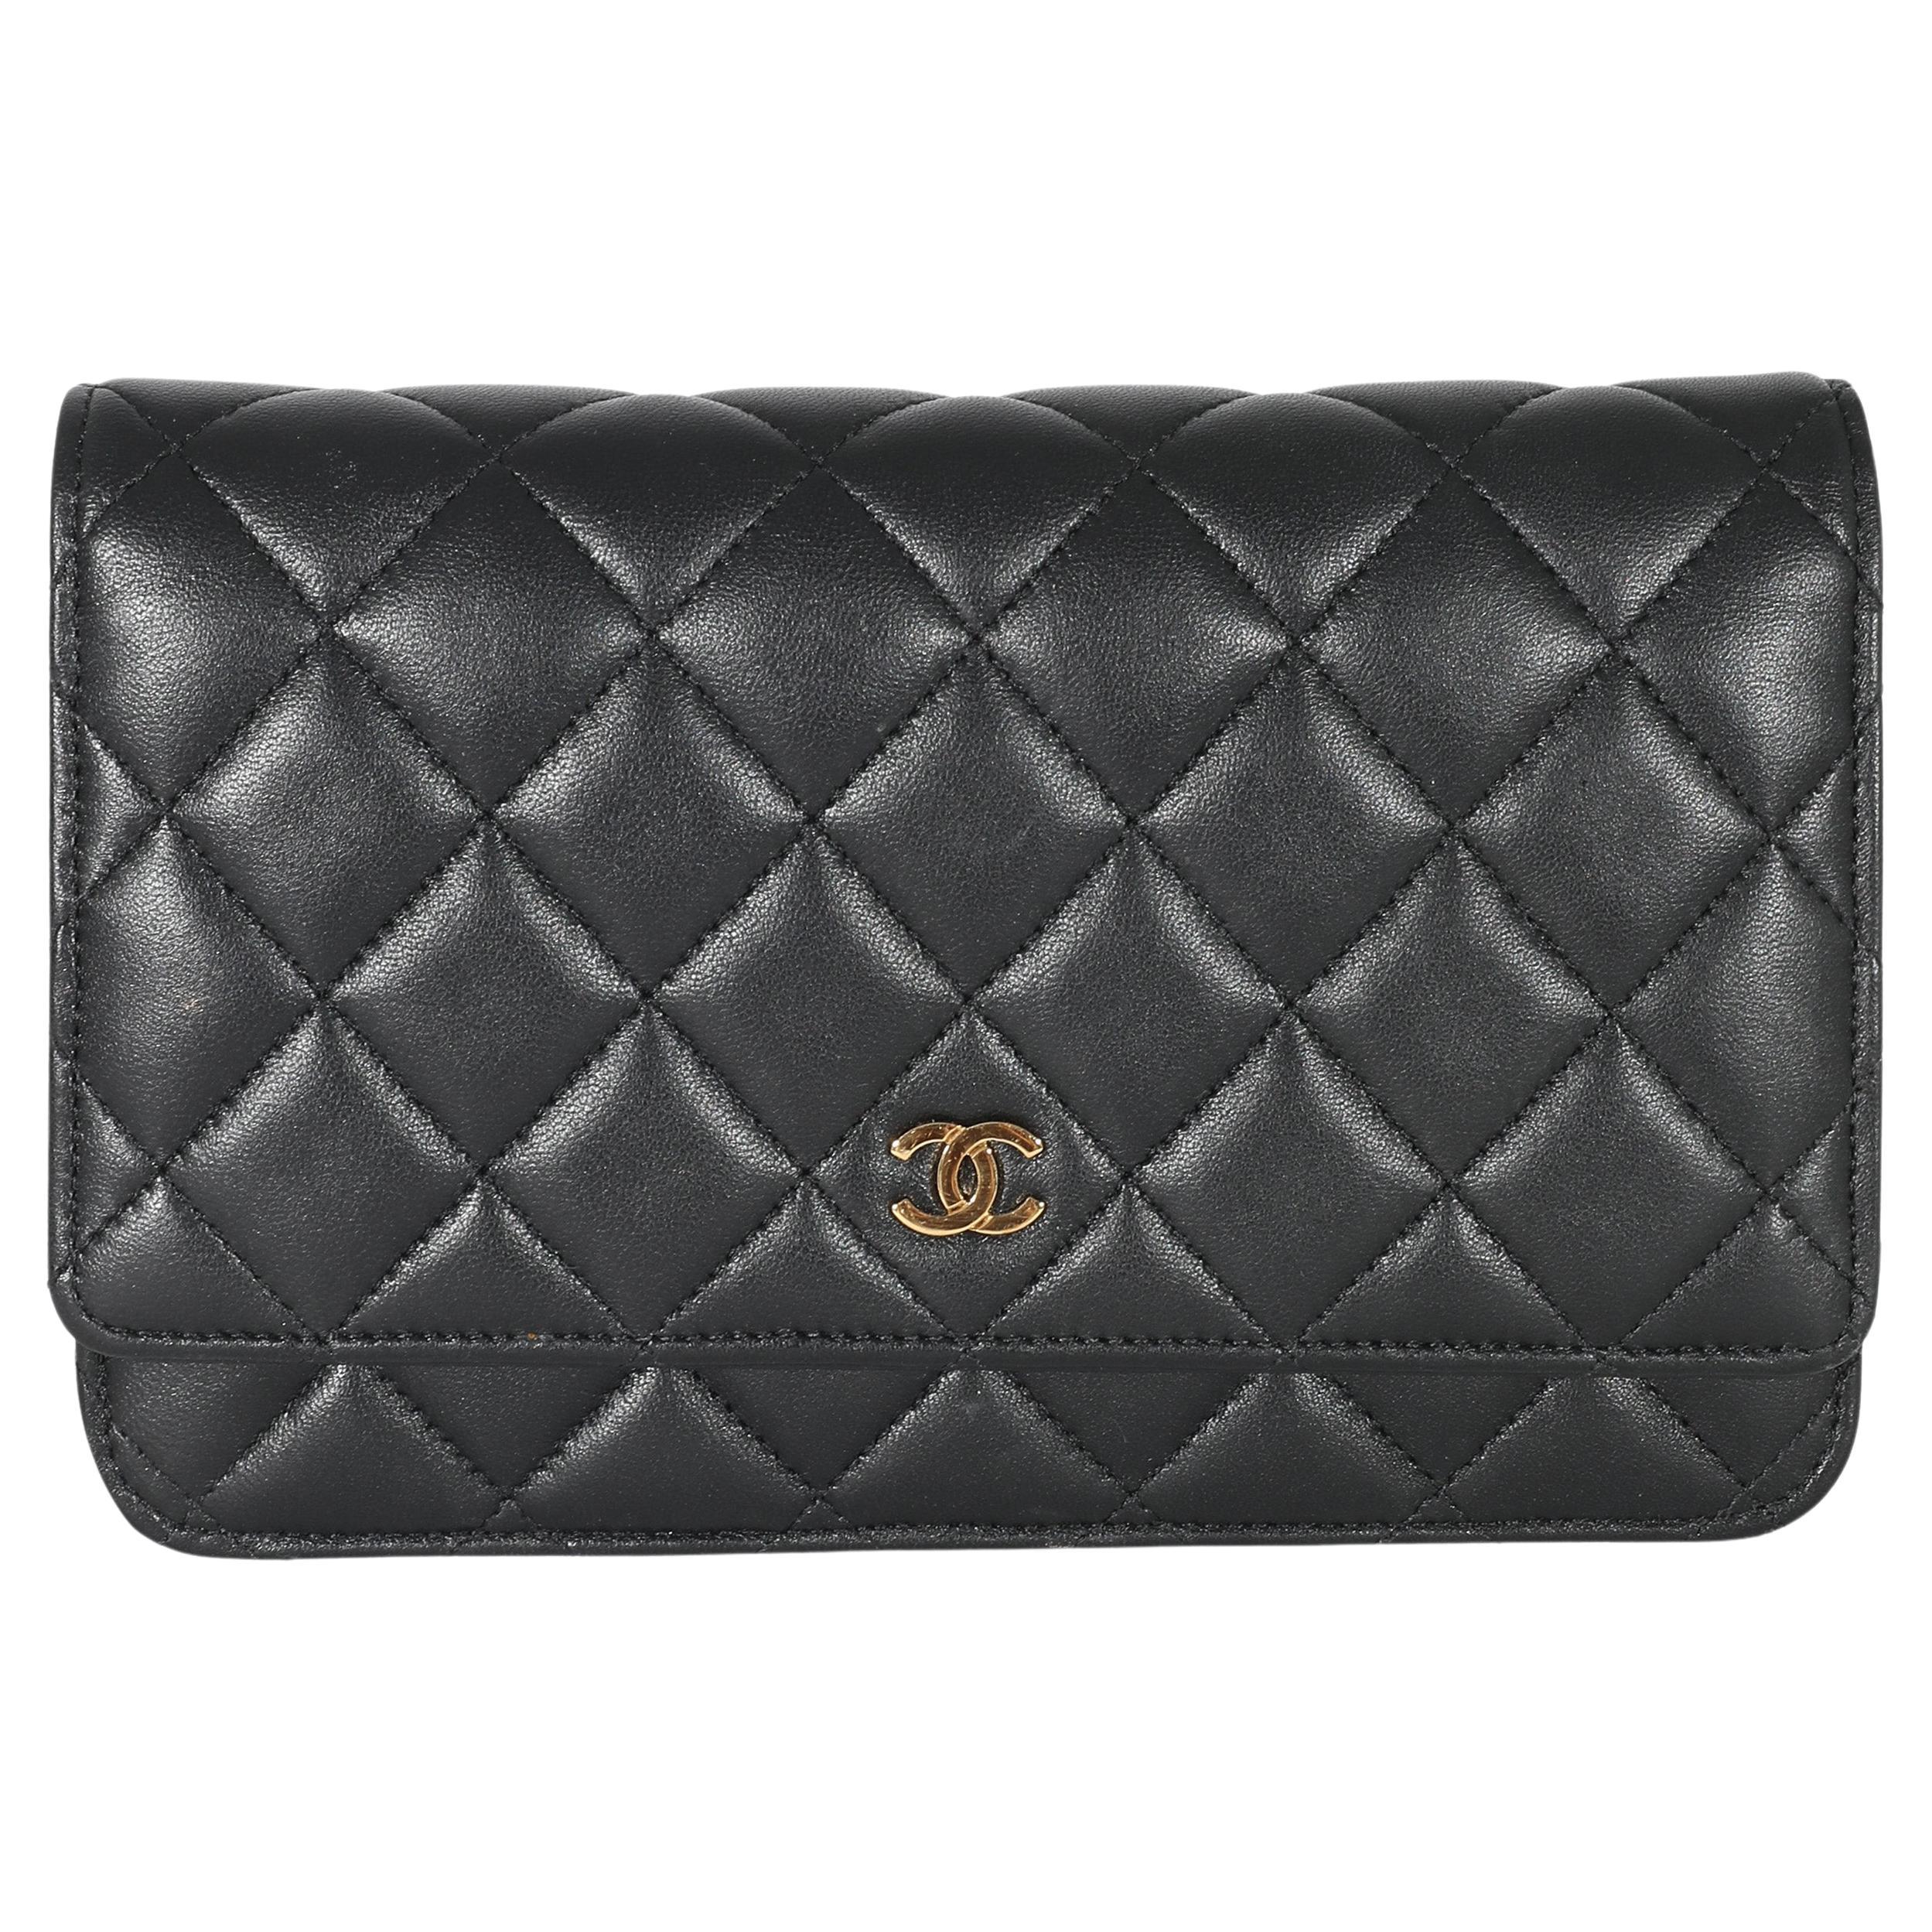 Chanel Black Lambskin Wallet On Chain